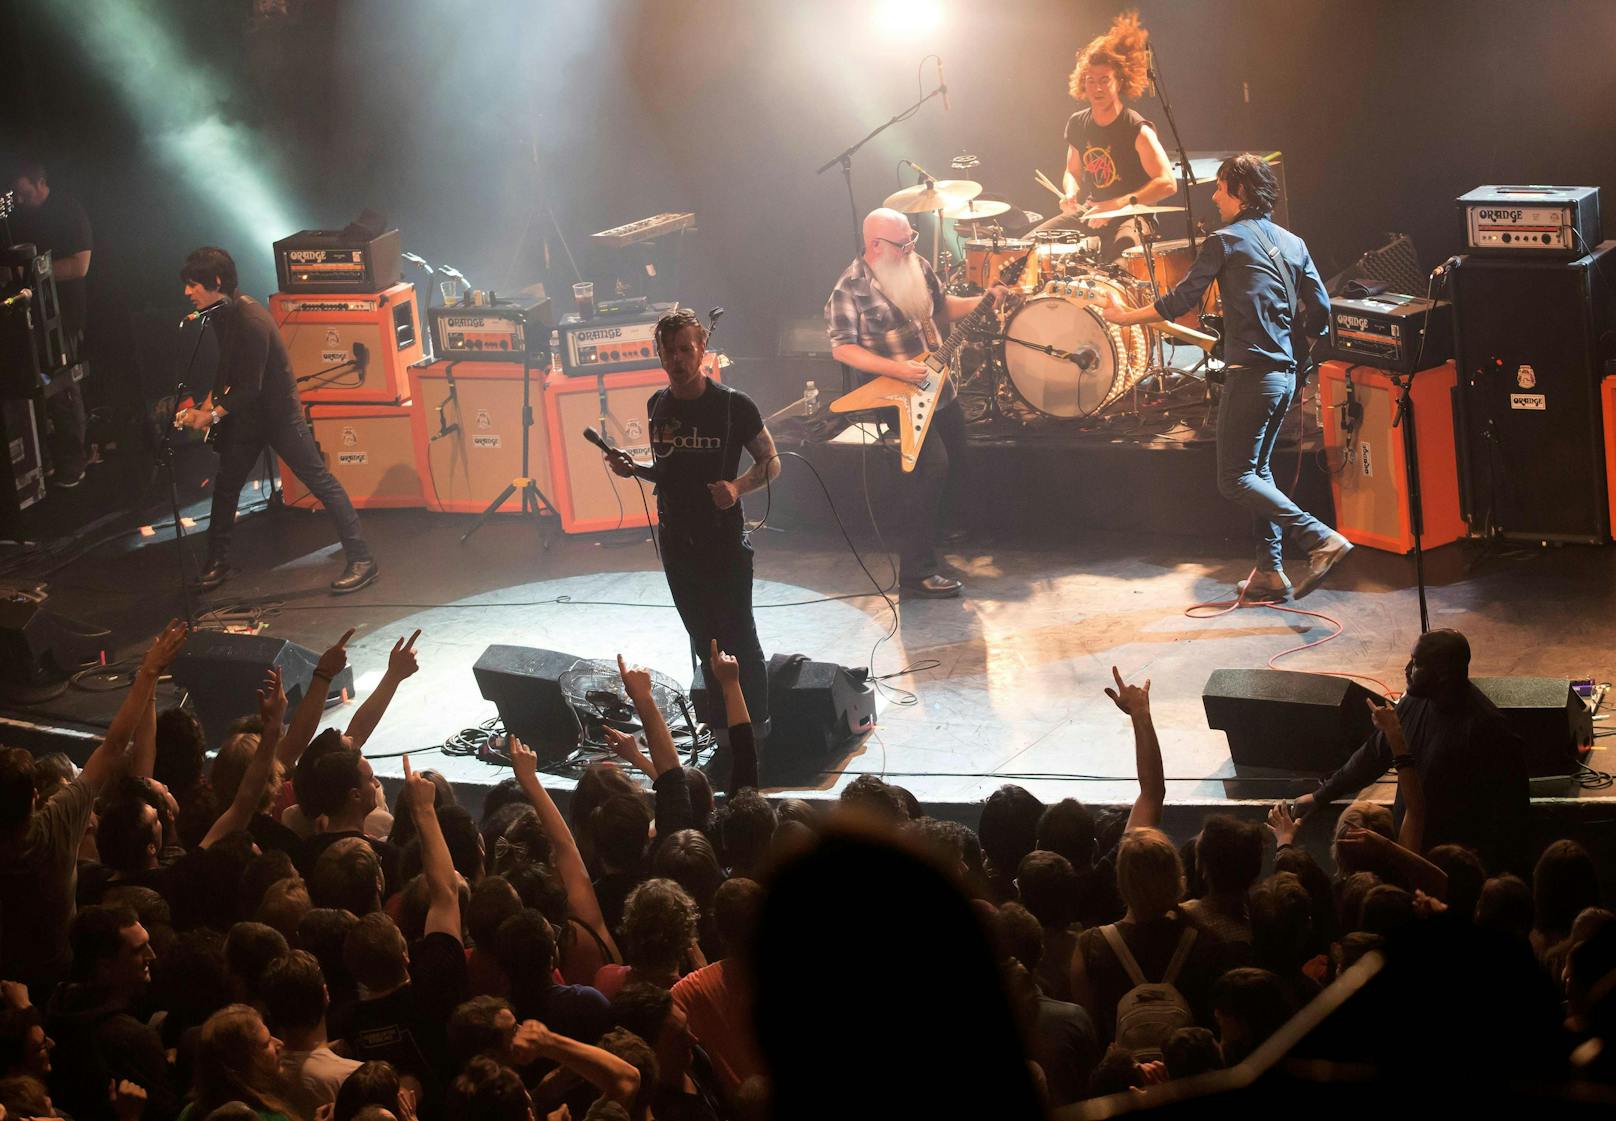 Extremisten hatten am 13. November 2015 das Konzert der <strong>Eagles of Death Metal</strong> in der Pariser Konzerthalle "Bataclan" gestürmt